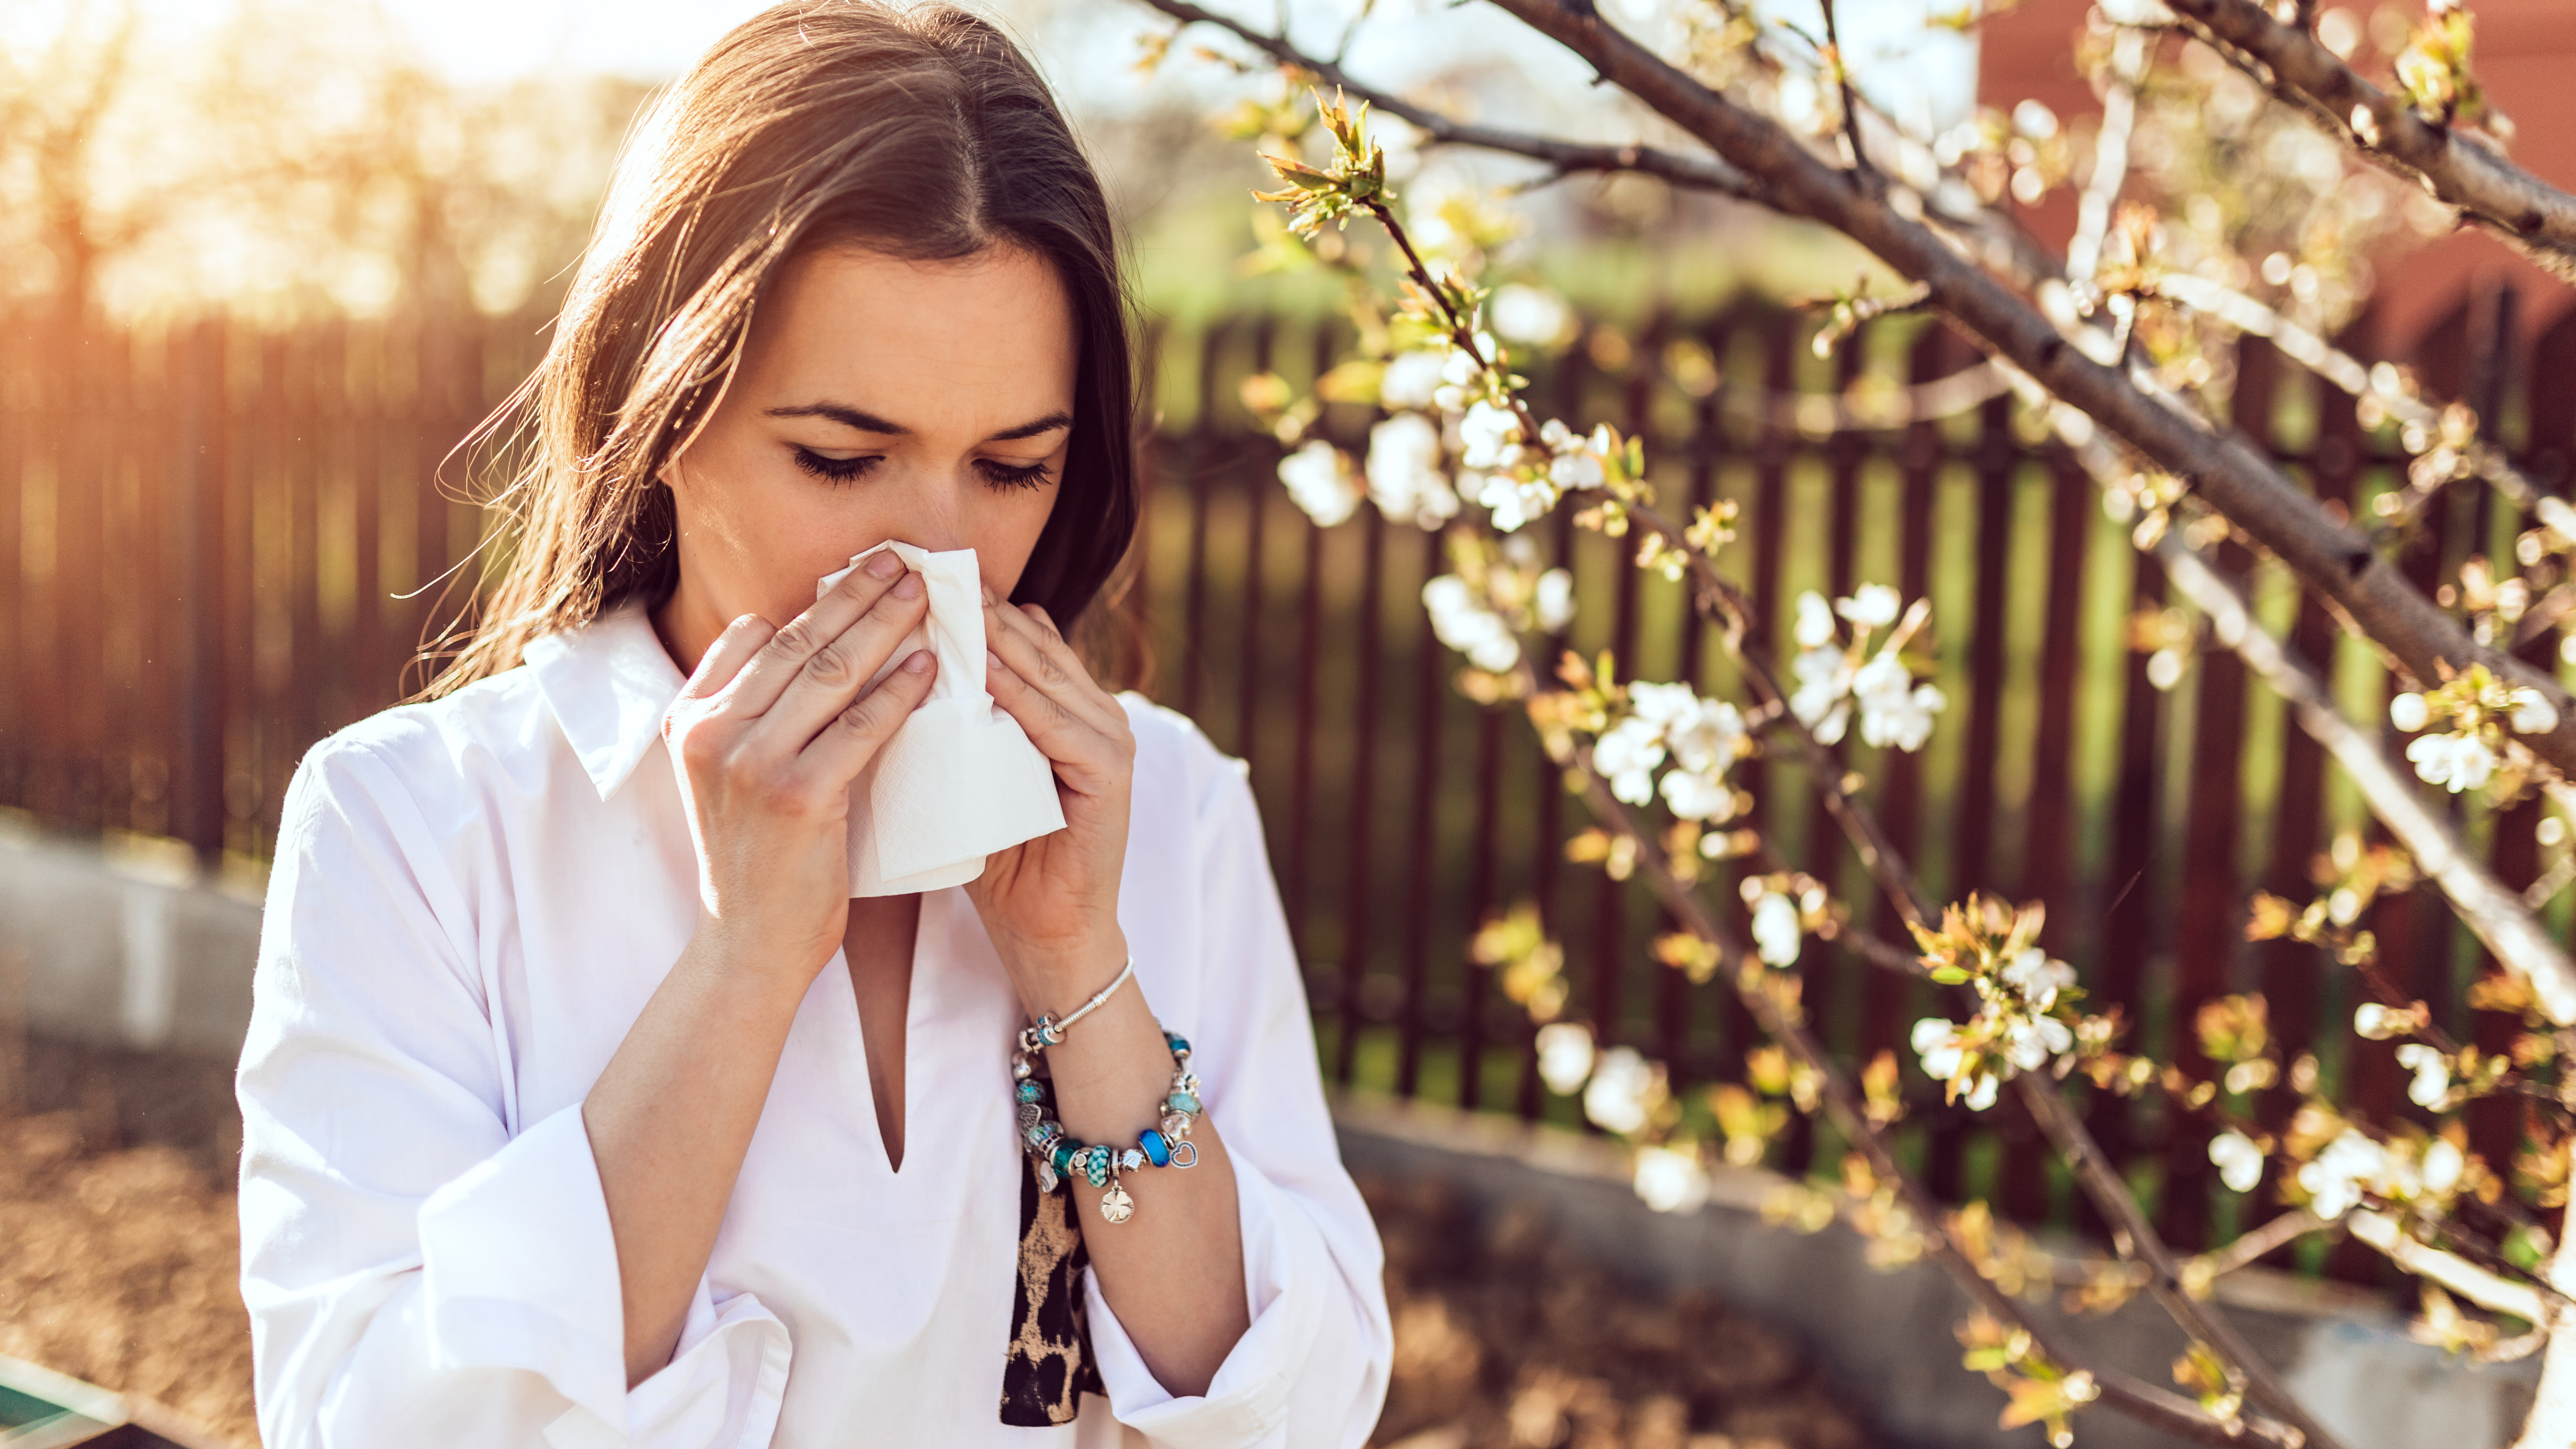 Los síntomas cardinales de la rinitis alérgica en respuesta al contacto con el alérgeno aparecen de manera inmediata con picor, estornudos y rinorrea (secreción viscosa por la nariz, tipo clara de huevo), pero el pico de los síntomas se produce 6 a 12 horas después, con la congestión y bloqueo nasal, obstrucción o taponamientoGETTY